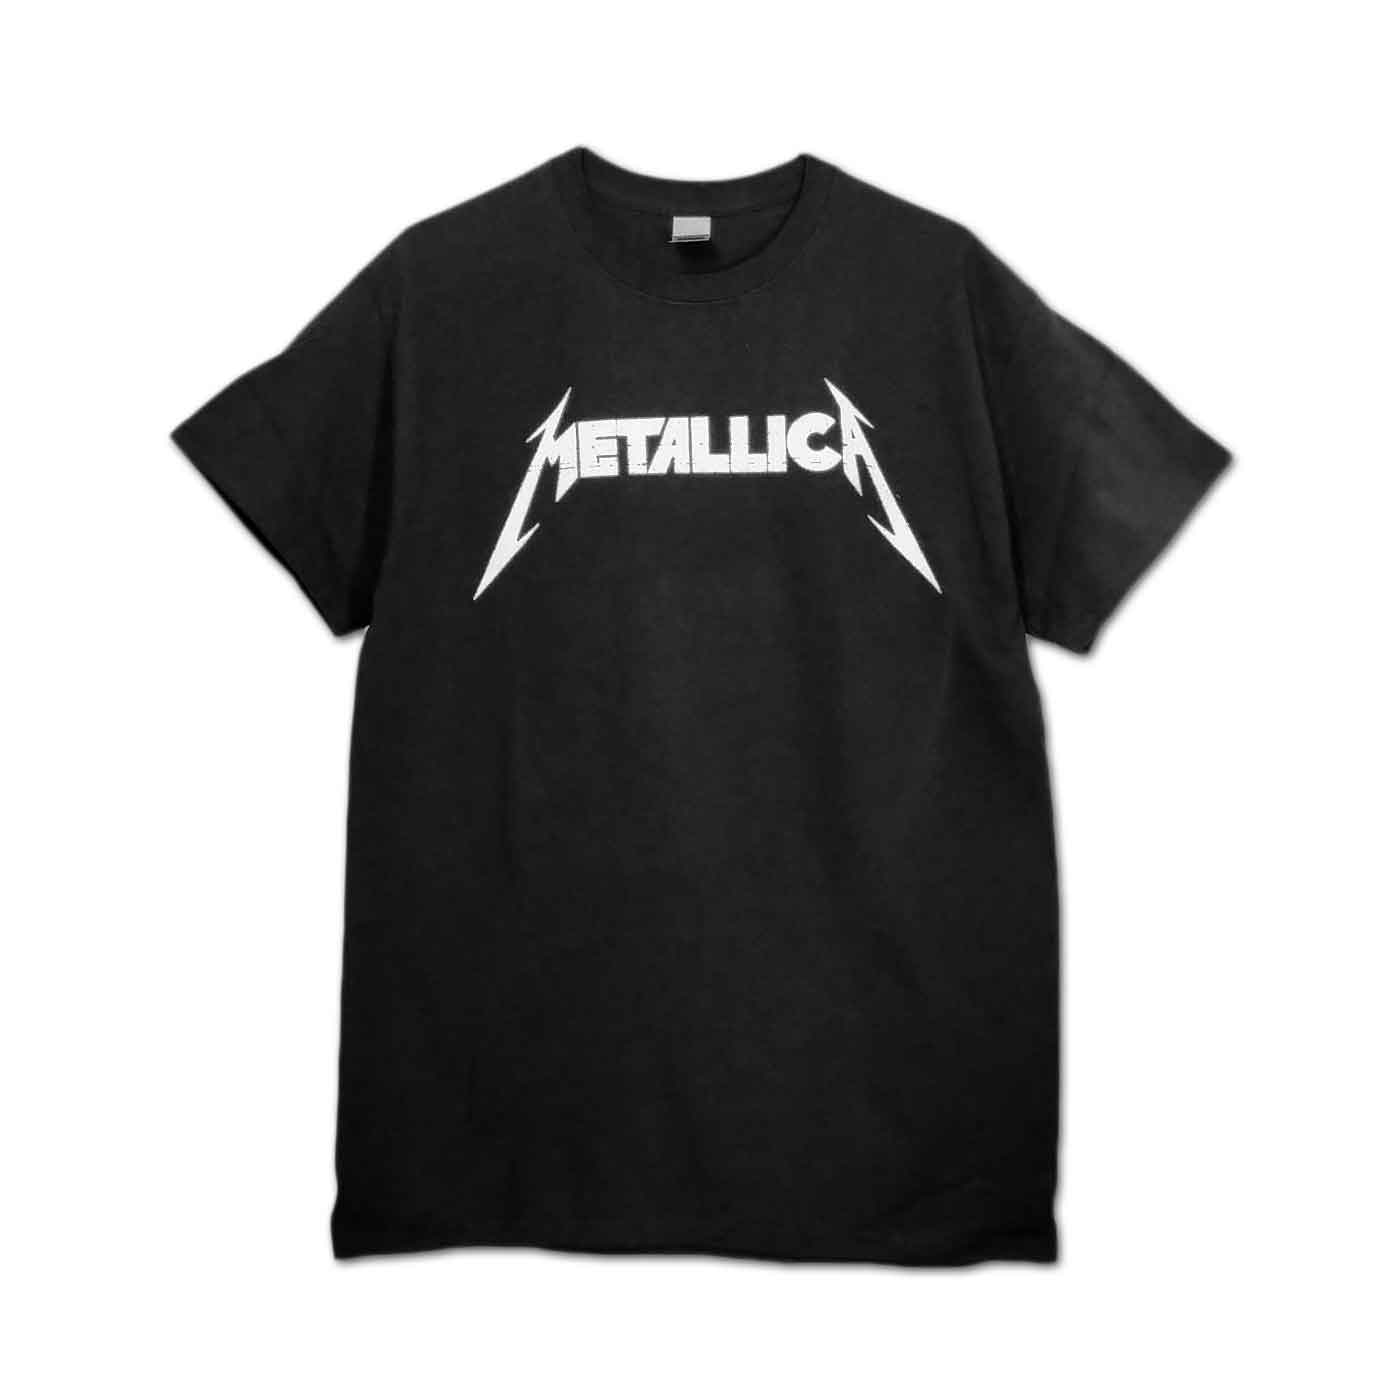 Metallica バンドTシャツ メタリカ Master Of Puppets Photo - バンドT